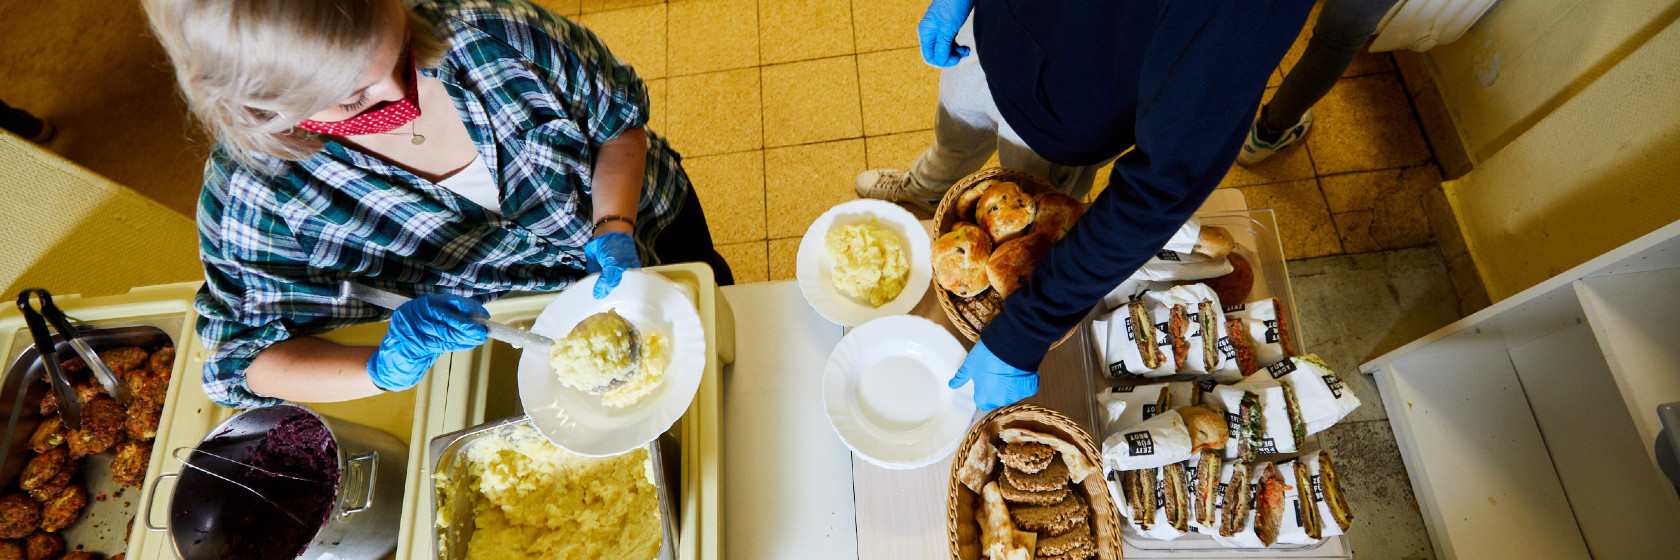 Ehrenamtliche geben Essen für Bedürftige bei der Kiezmahlzeit aus.